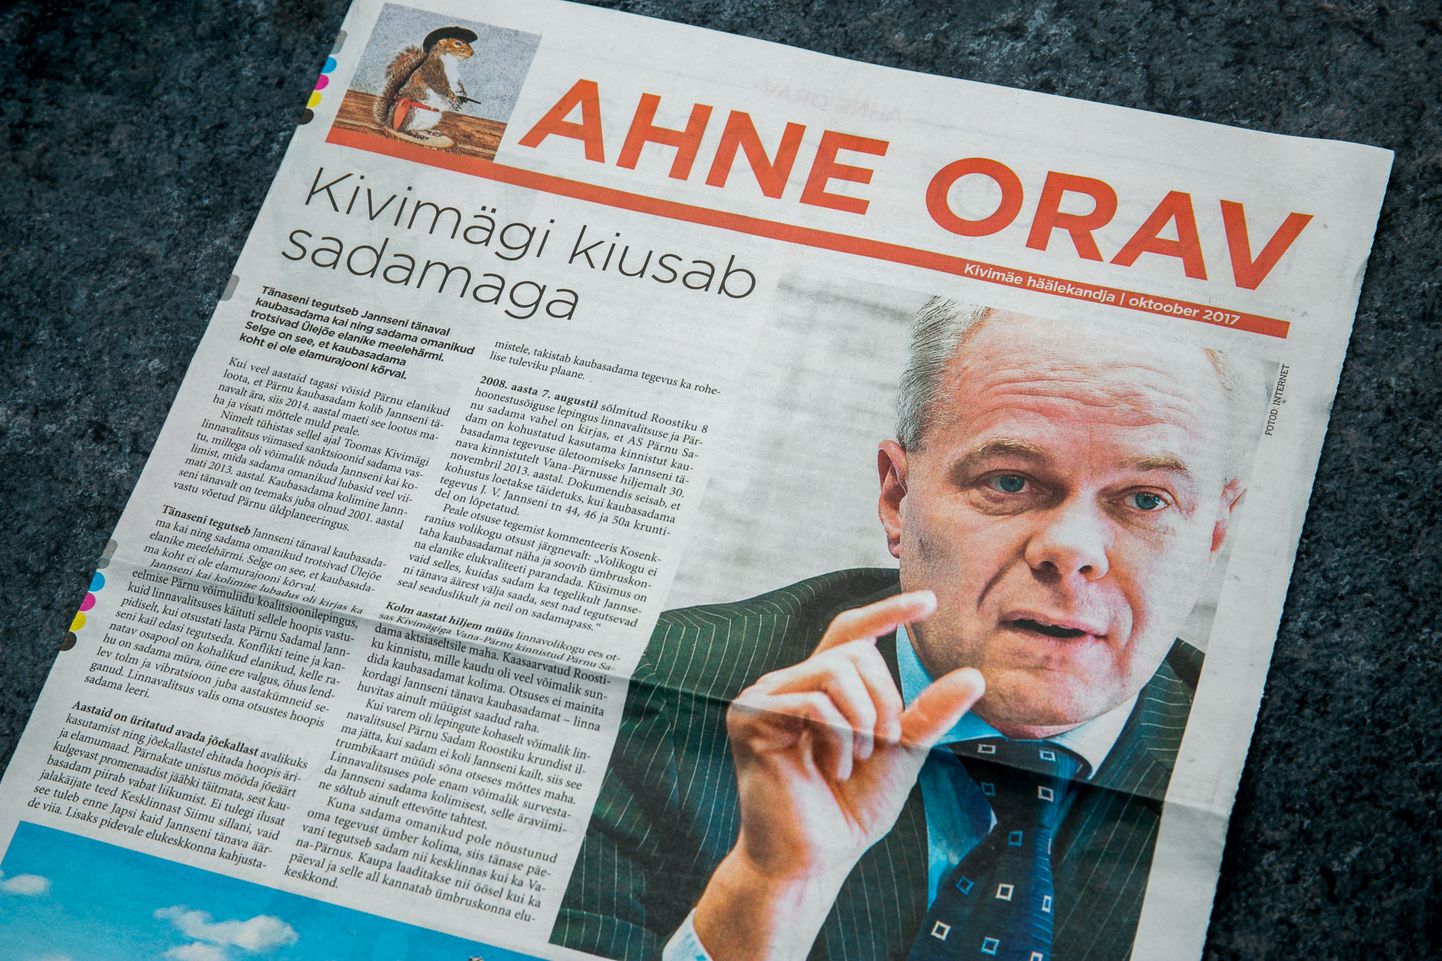 Eile pärnakate postkastidesse saadetud "ajalehe" Ahne Orav koostas Juku-Kalle Raid, kes enda sõnul tegi seda omal initsiatiivil.